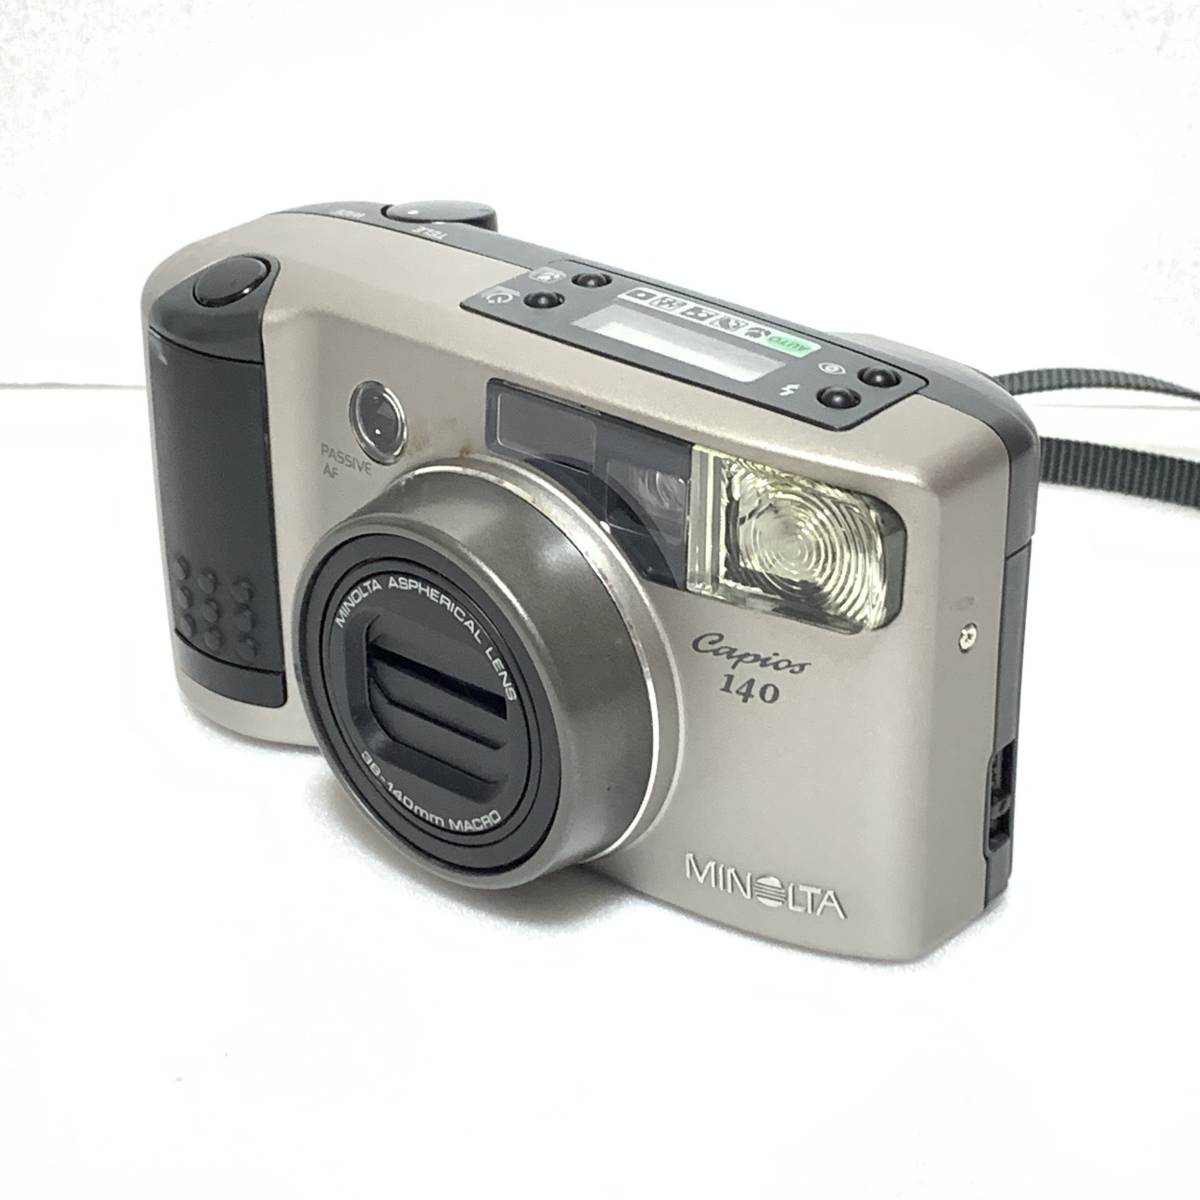 大切な ミノルタ MINOLTA Capios 140 38-140mm フィルムカメラ